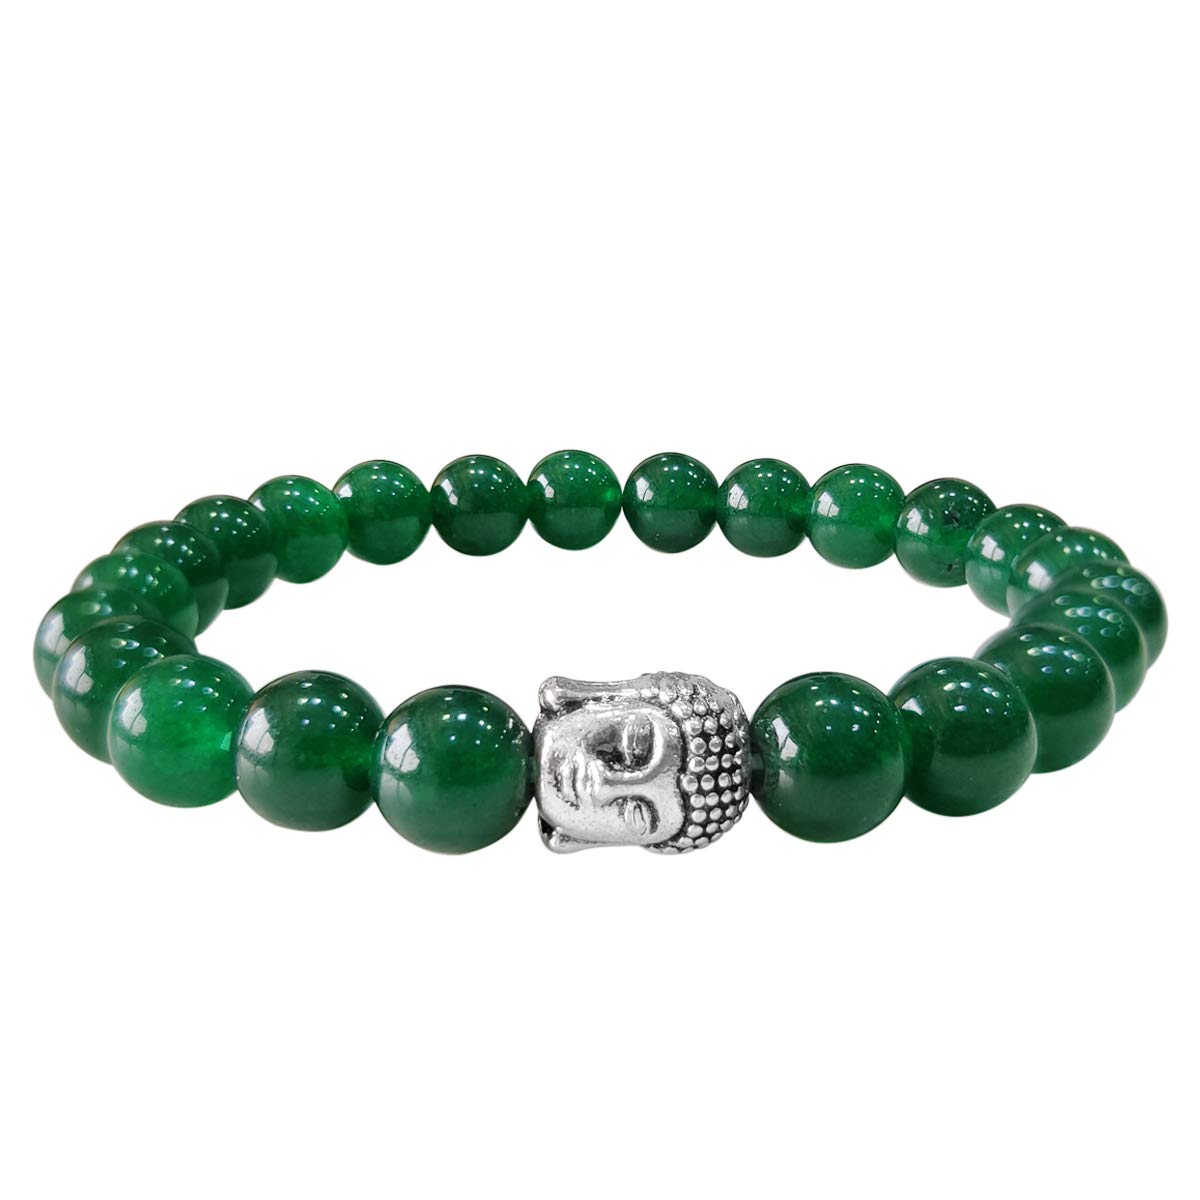 Bluequeen Green Jade Crystal Elastic 8mm Stretch Crystal Yoga,Meditation Buddha Bracelet